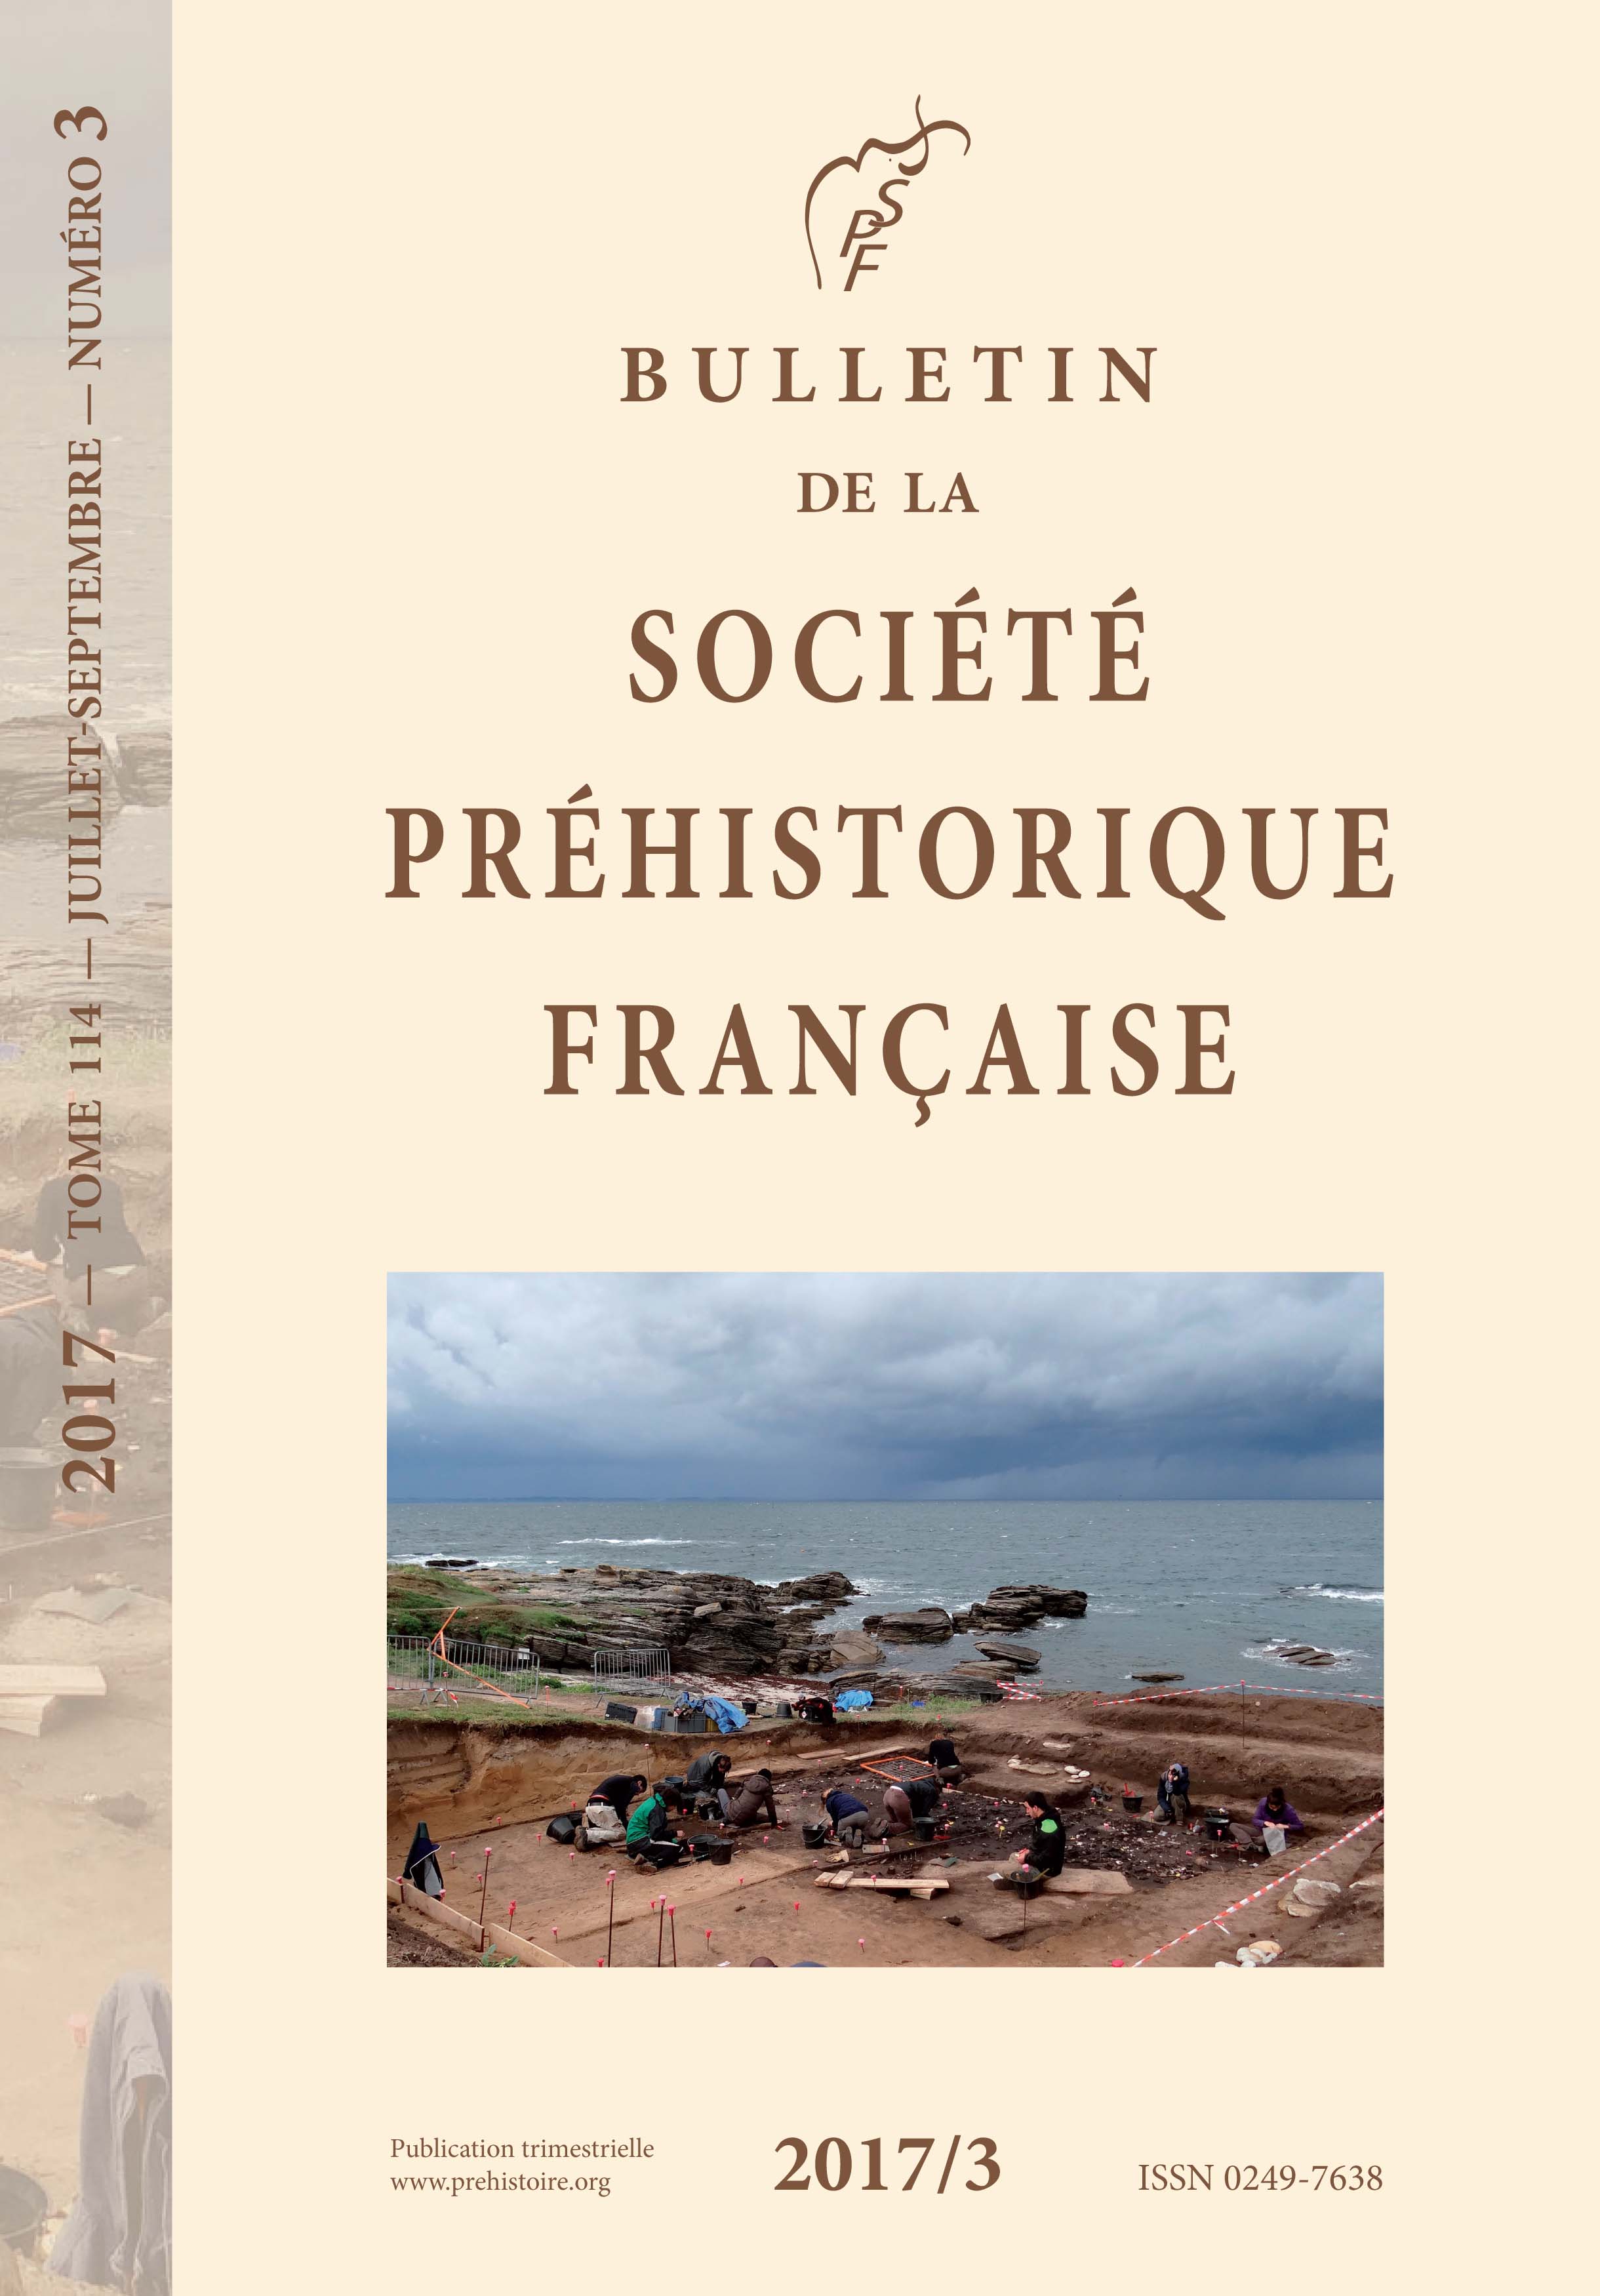 BULLETIN DE LA SOCIETE PREHISTORIQUE FRANCAISE